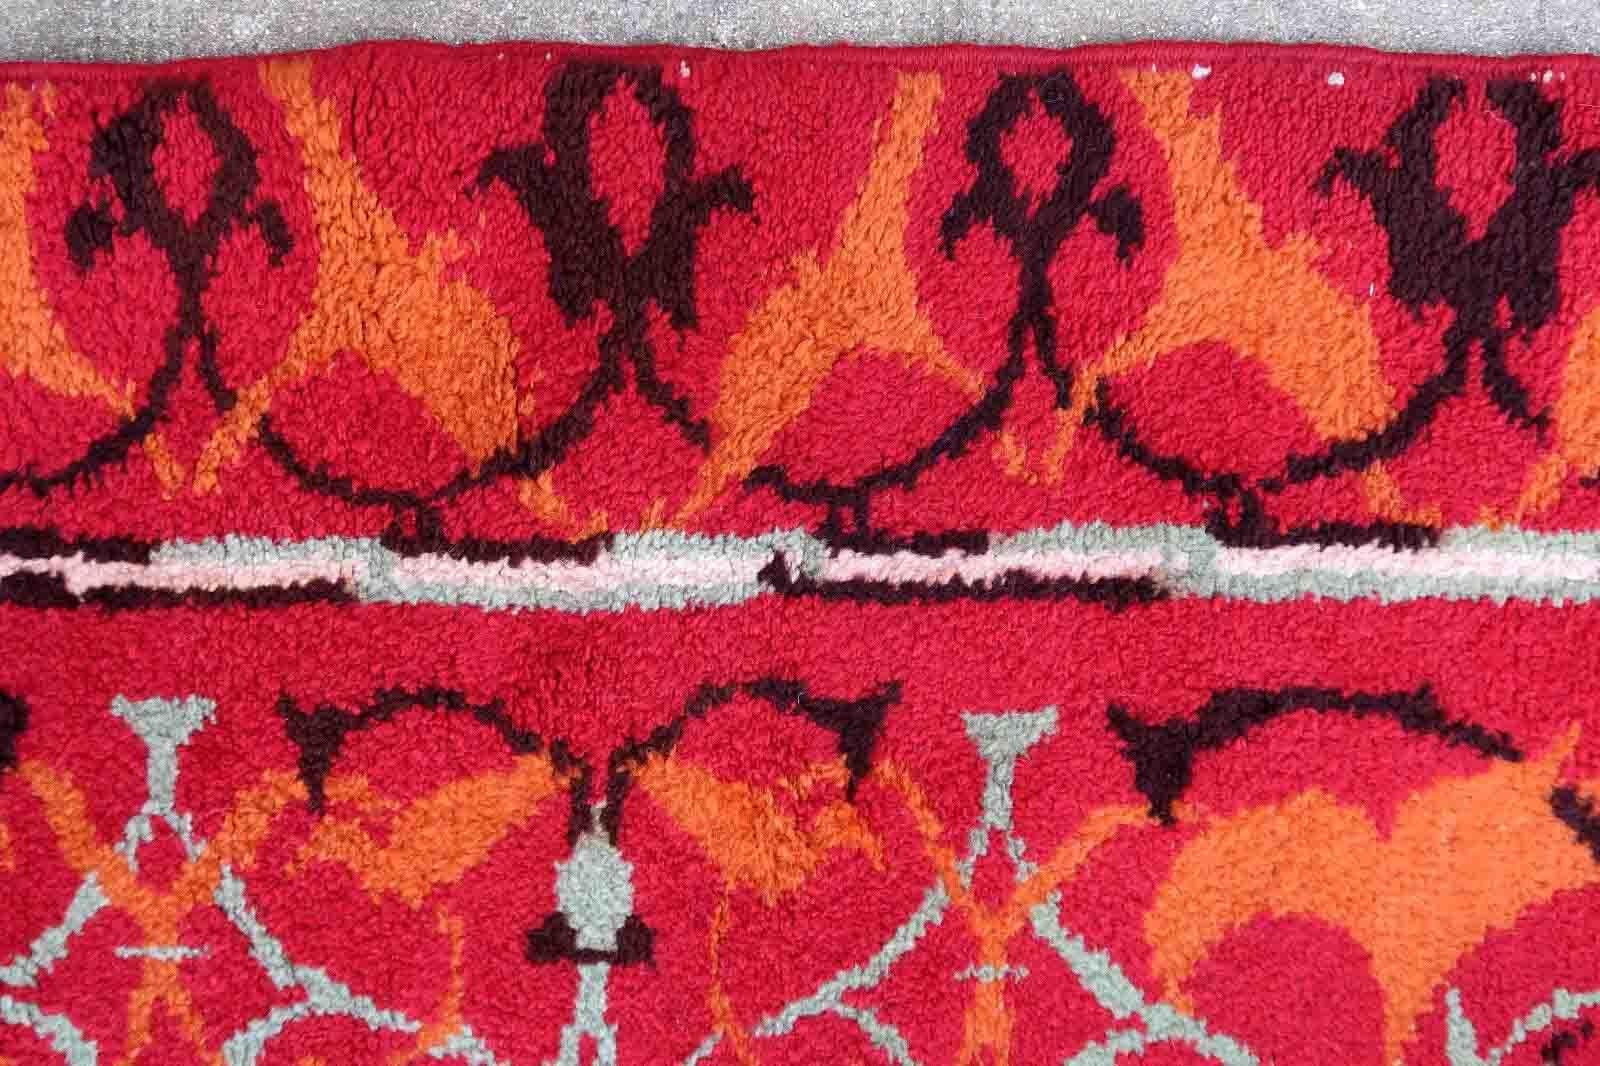 Handgefertigter Vintage-Teppich Savonnerie aus Frankreich im Art-Déco-Design. Der Teppich stammt aus der Mitte des 20. Jahrhunderts und ist in gutem Originalzustand.

-Zustand: original gut,

-CIRCA: 1950er Jahre,

-Größe: 4,7' x 5,5' (145cm x